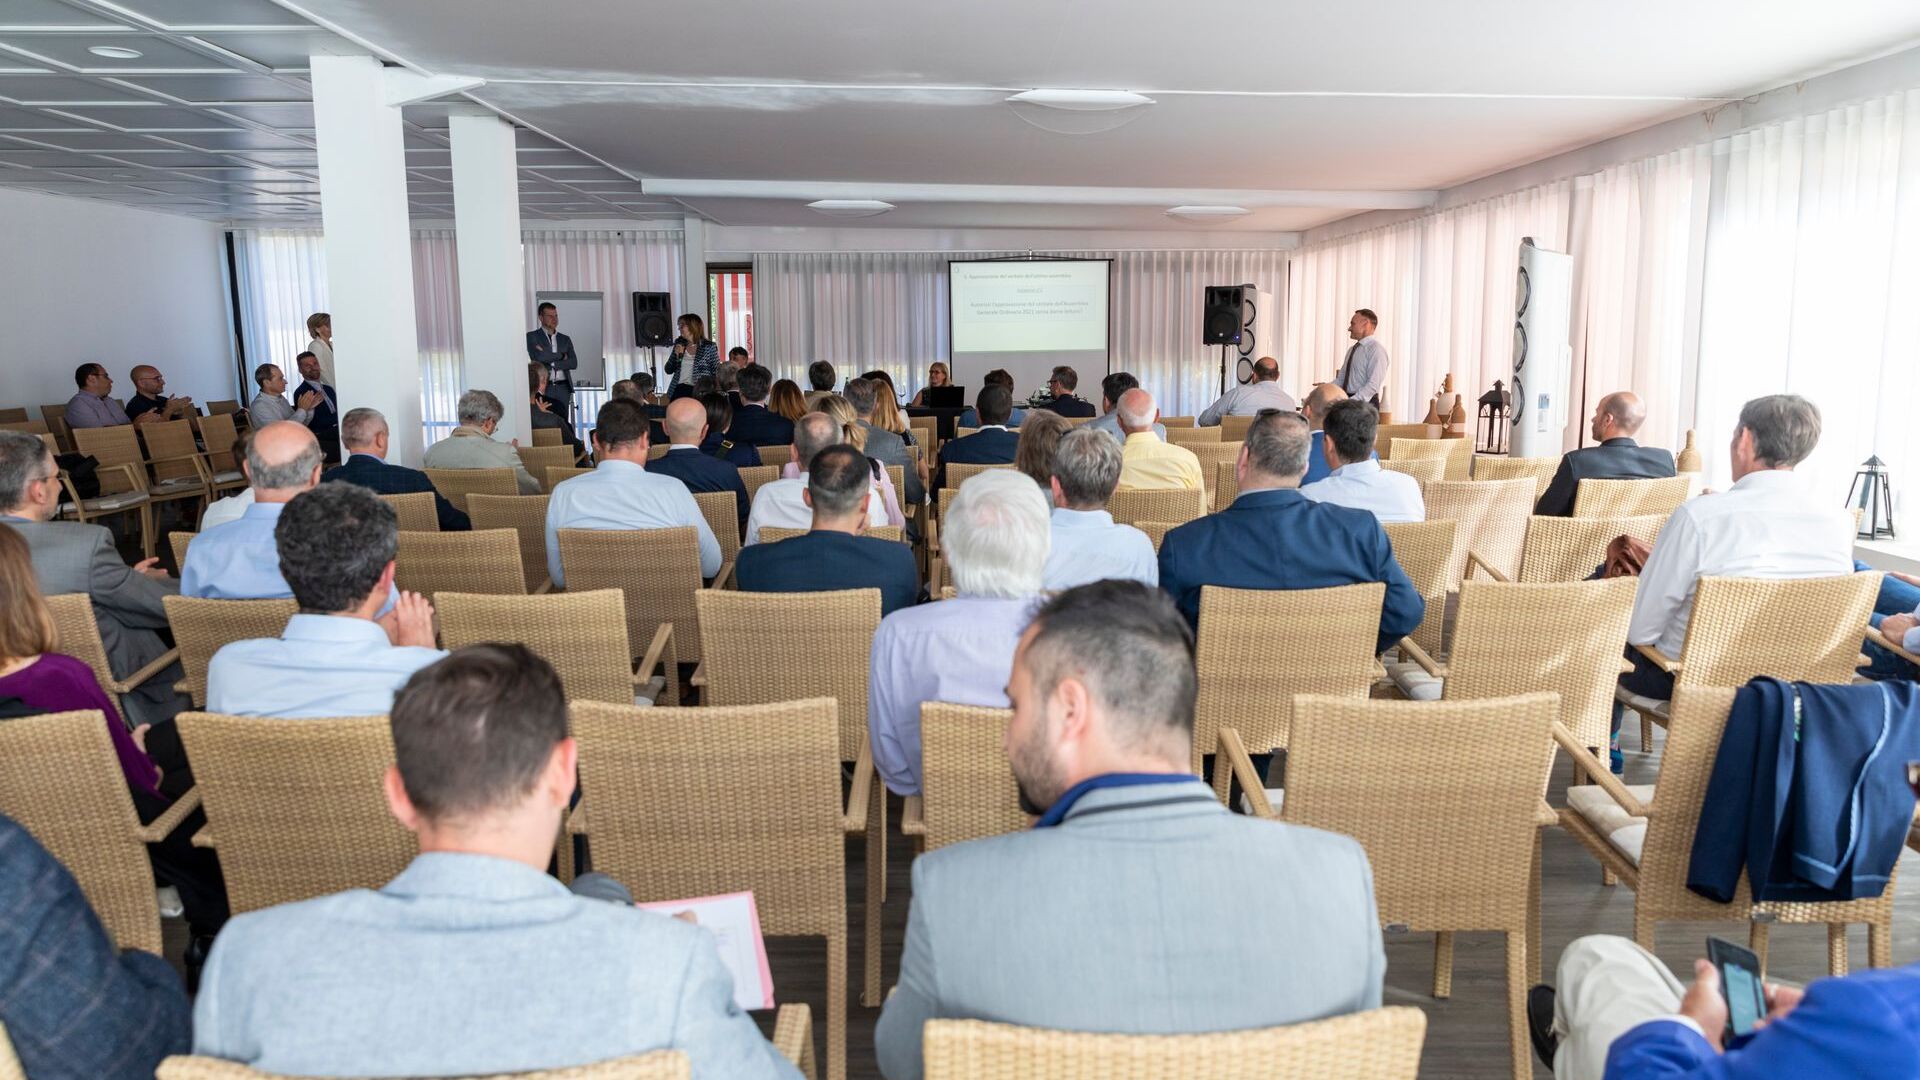 L'Assemblea Generale Ordinaria dell'associazione ated-ICT Ticino si è svolta il 7 giugno 2022 a Cadro